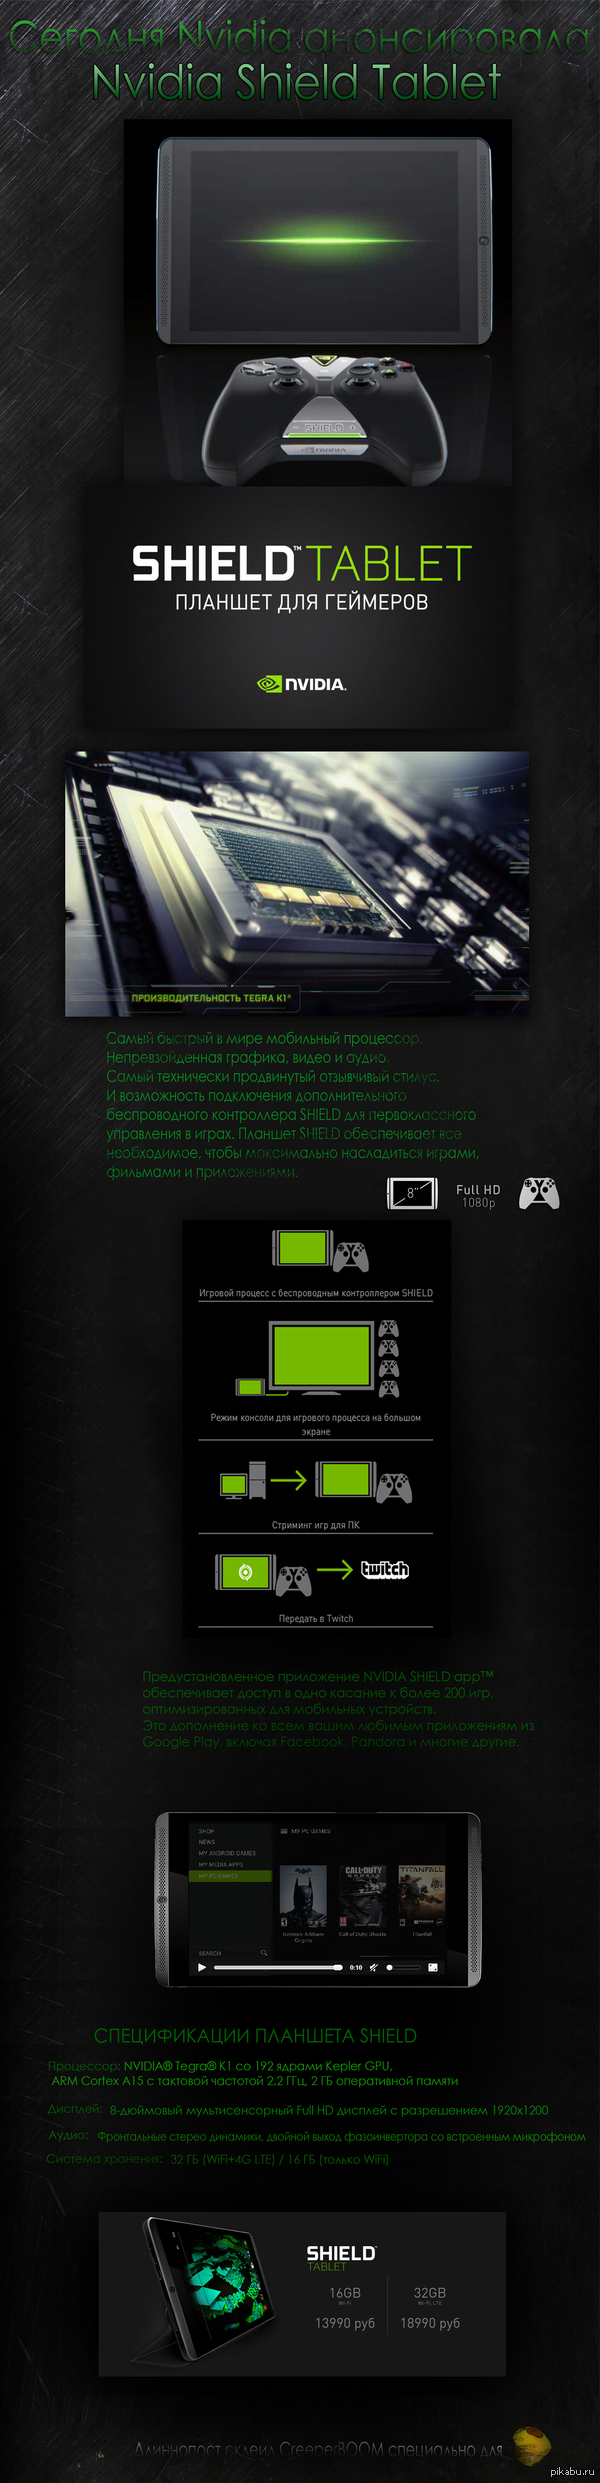 Nvidia  Nvidia Shield Tablet     .      Nvidia,    .